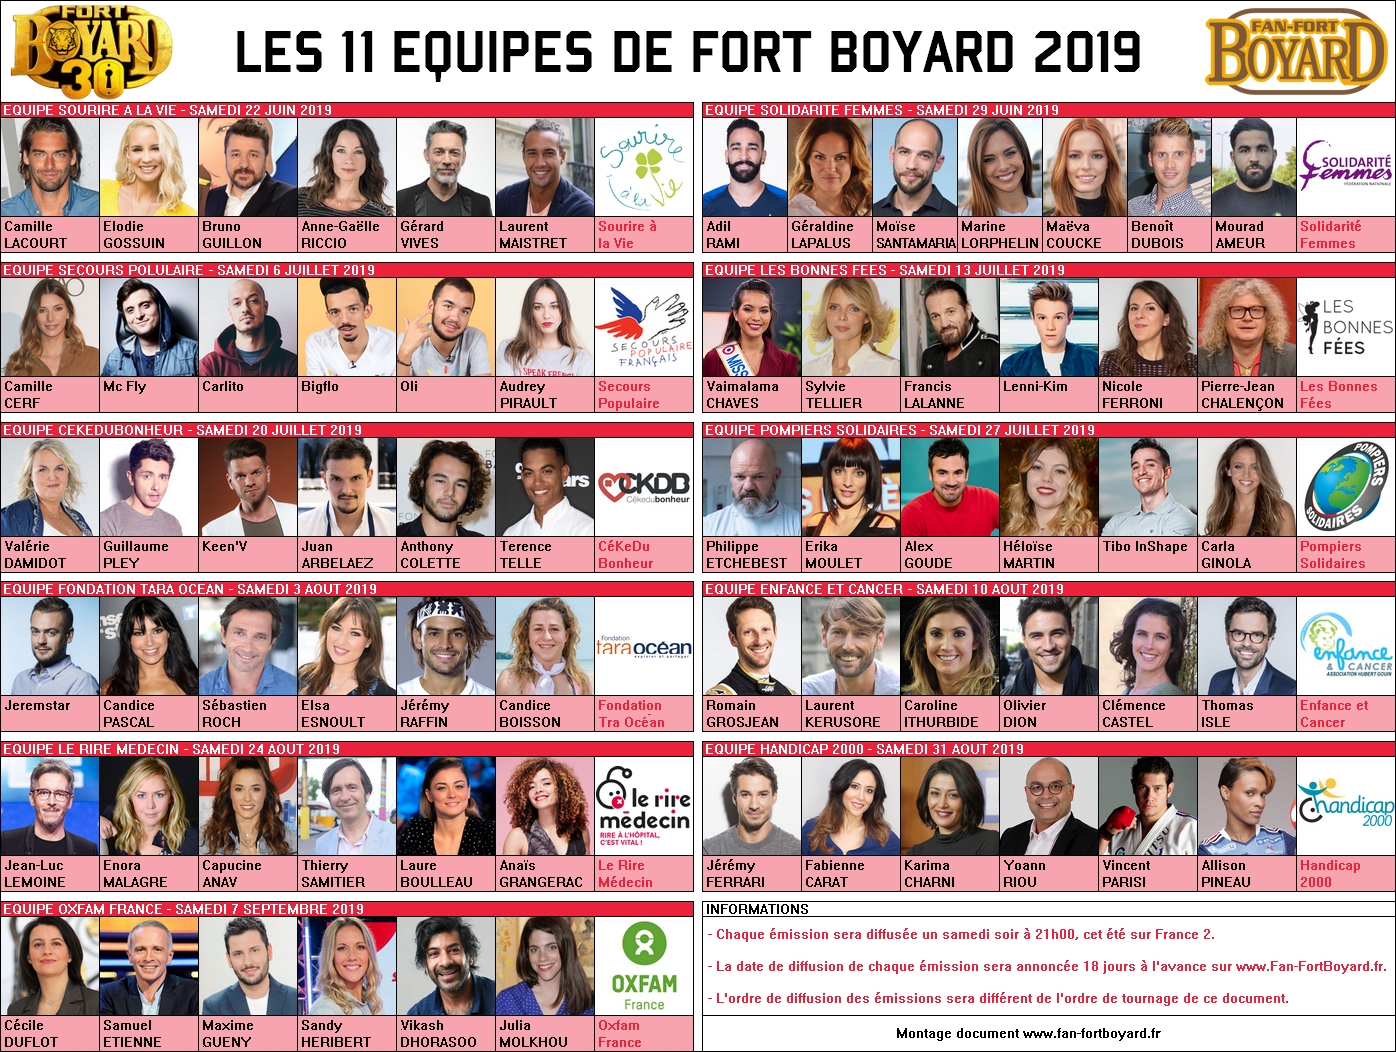 Fort Boyard 2019 - Les 11 équipes de la 30e saison